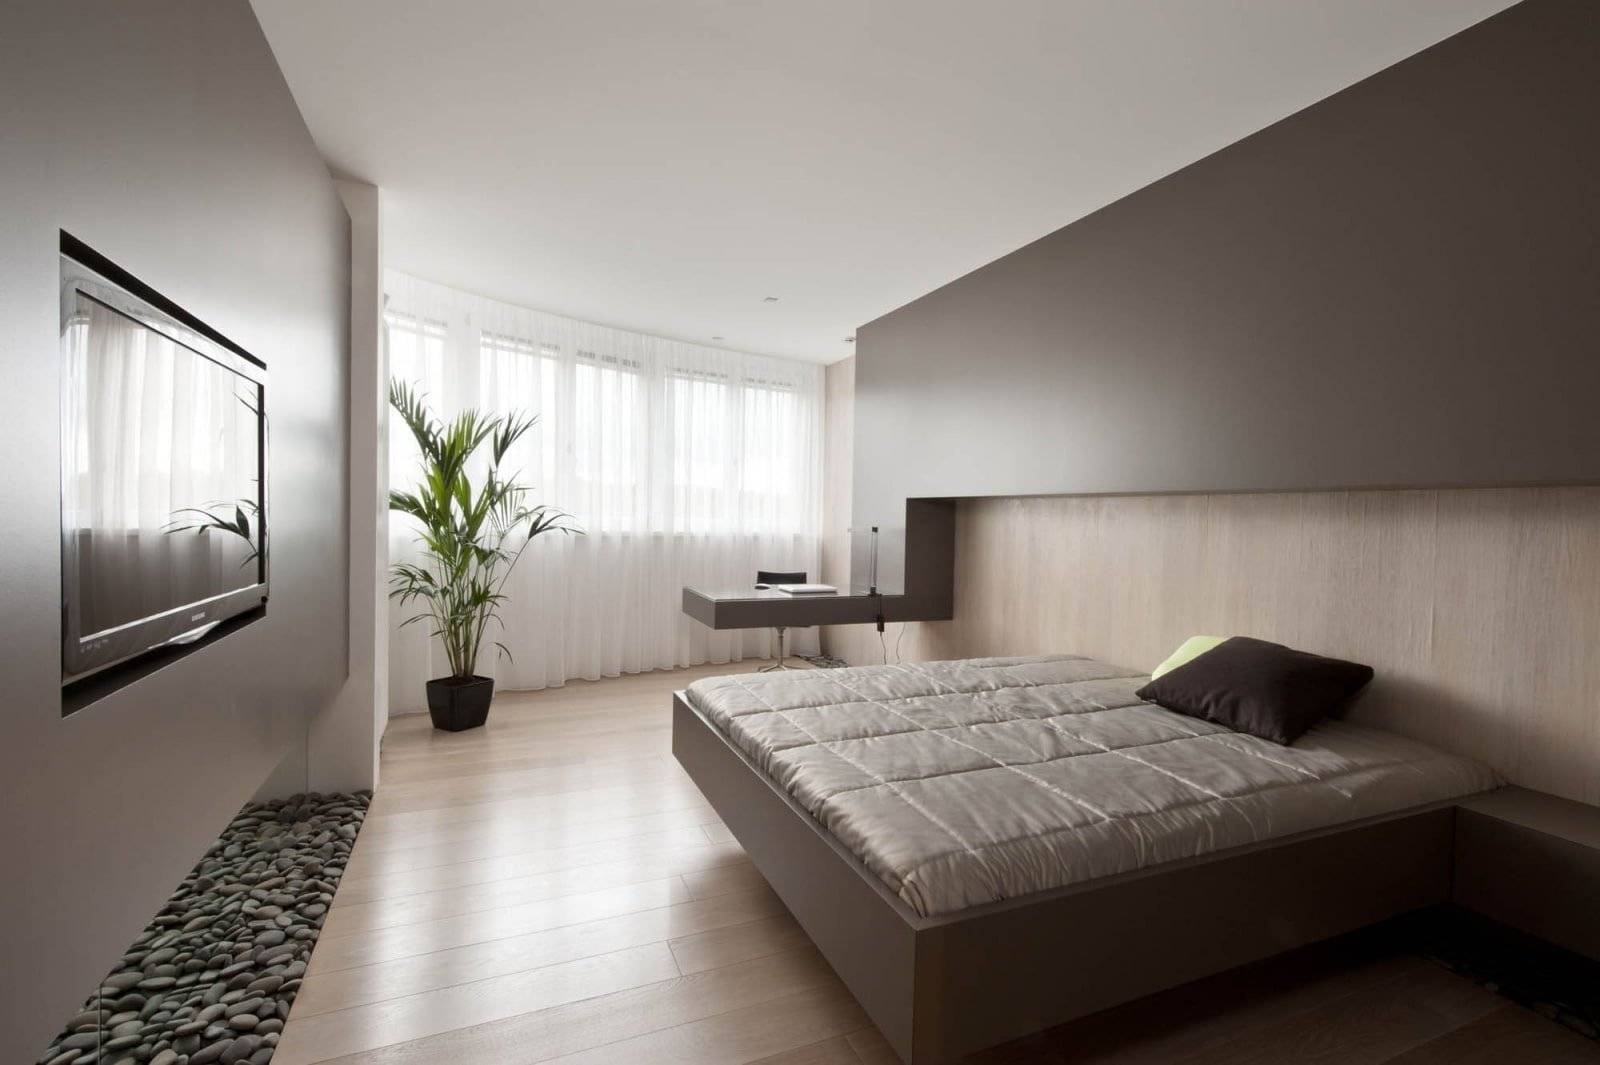 Дизайн спальни минимализм: отделка спальни в стиле минимализм